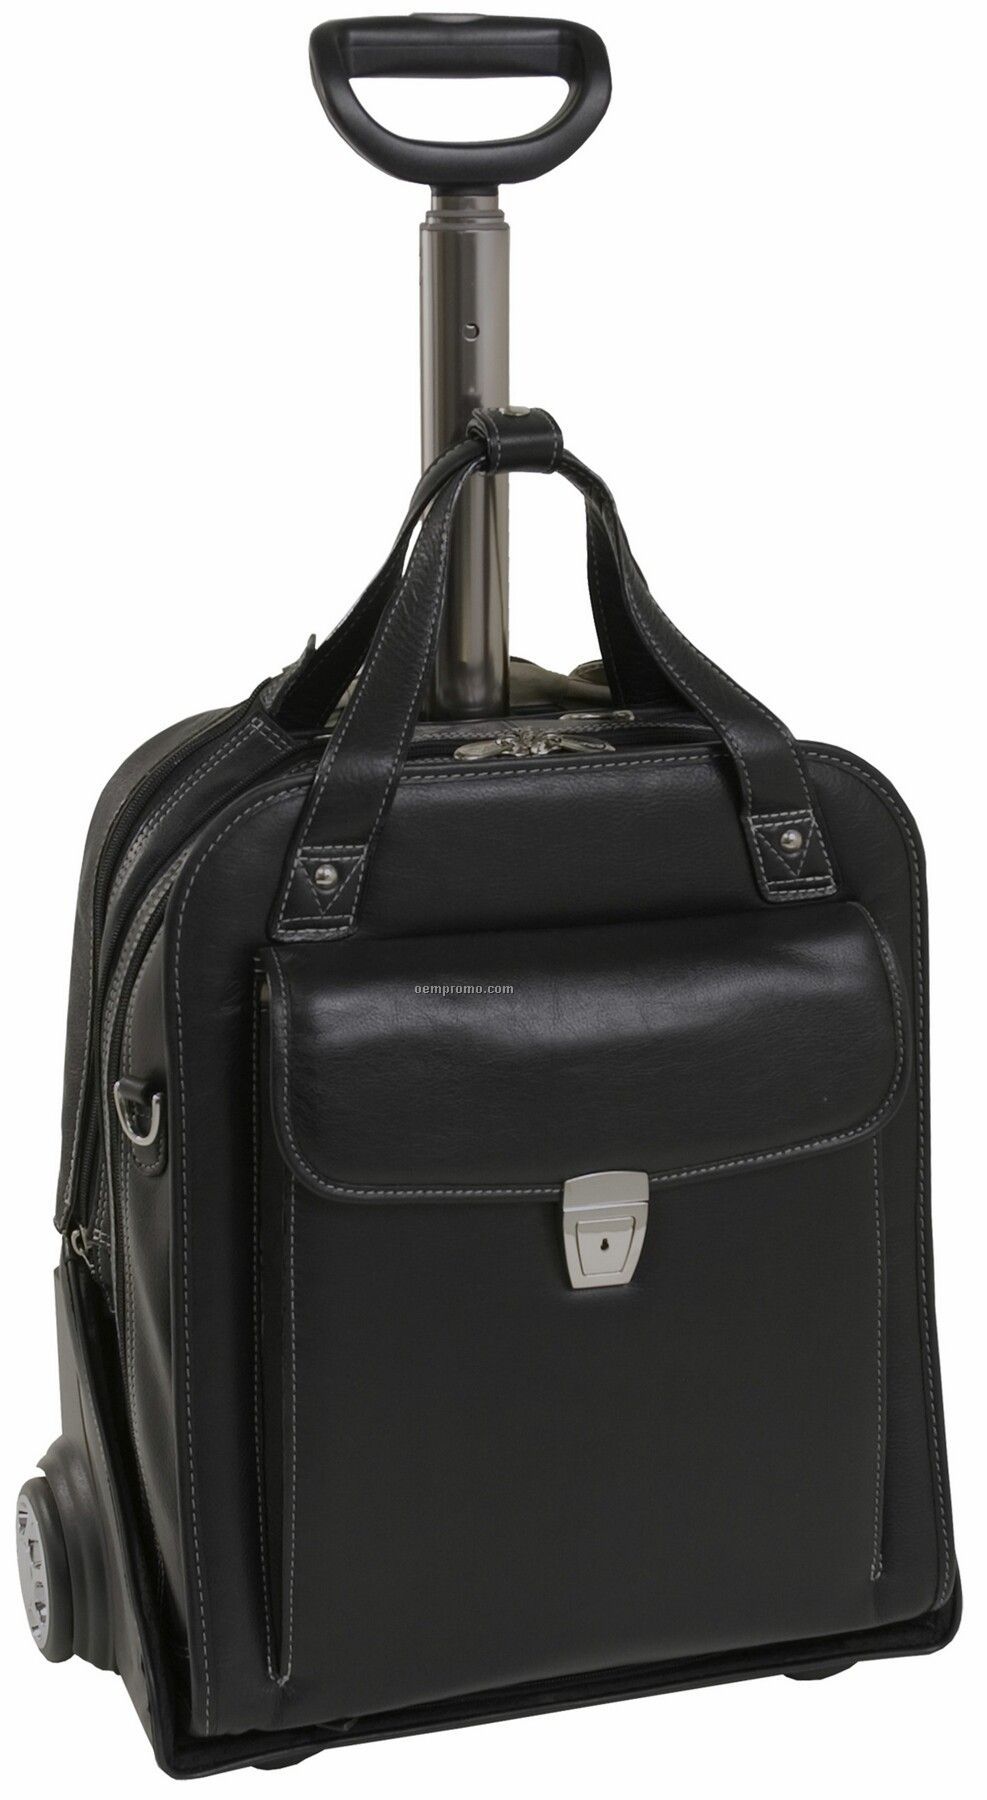 Pastenello Leather Vertical Detachable Wheeled Laptop Case - Black